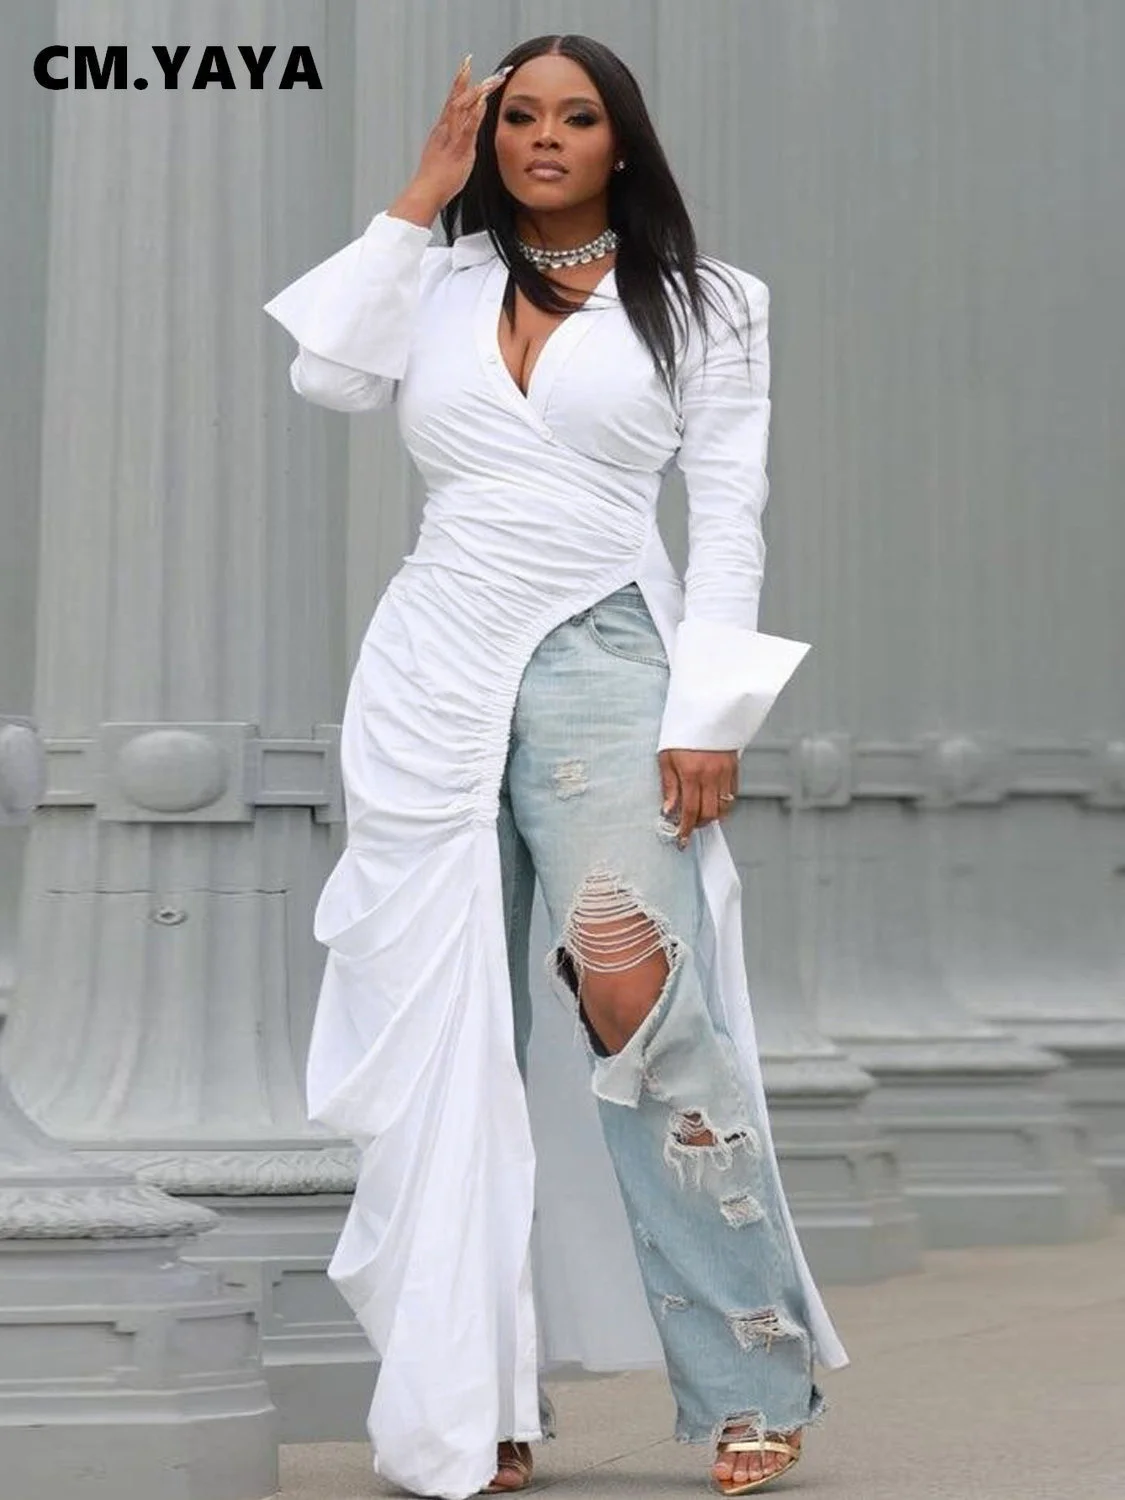 

Женское винтажное платье макси CM.YAYA, белое длинное платье с длинным рукавом, высоким разрезом, рюшами, отложным воротником, модные уличные платья